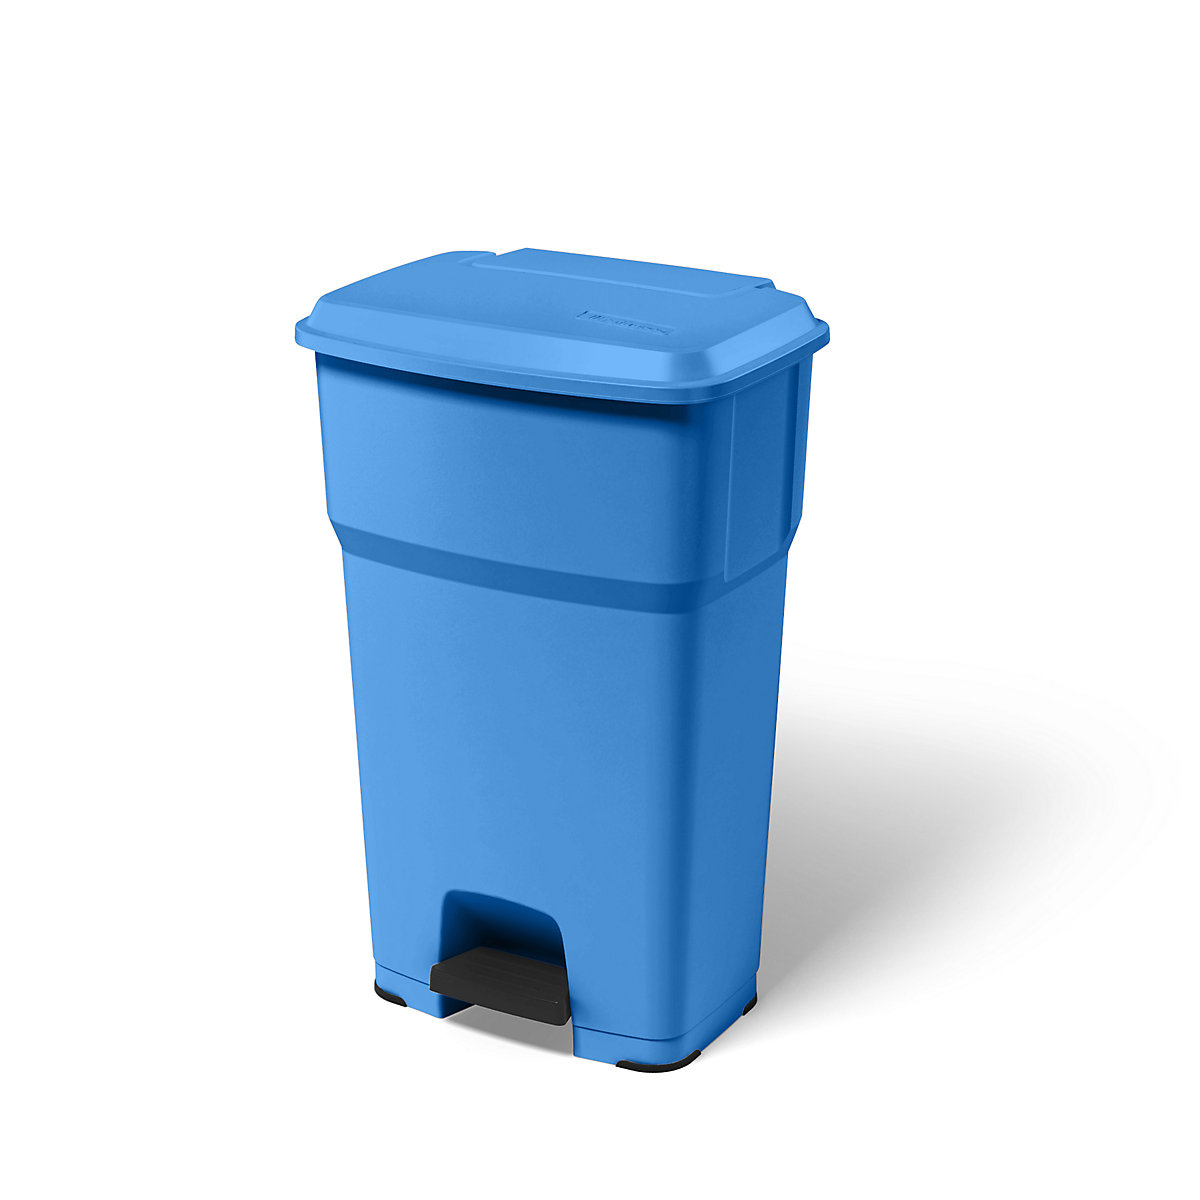 Zberač odpadkov s pedálom HERA – rothopro, objem 85 l, š x v x h 490 x 790 x 390 mm, modrá-9